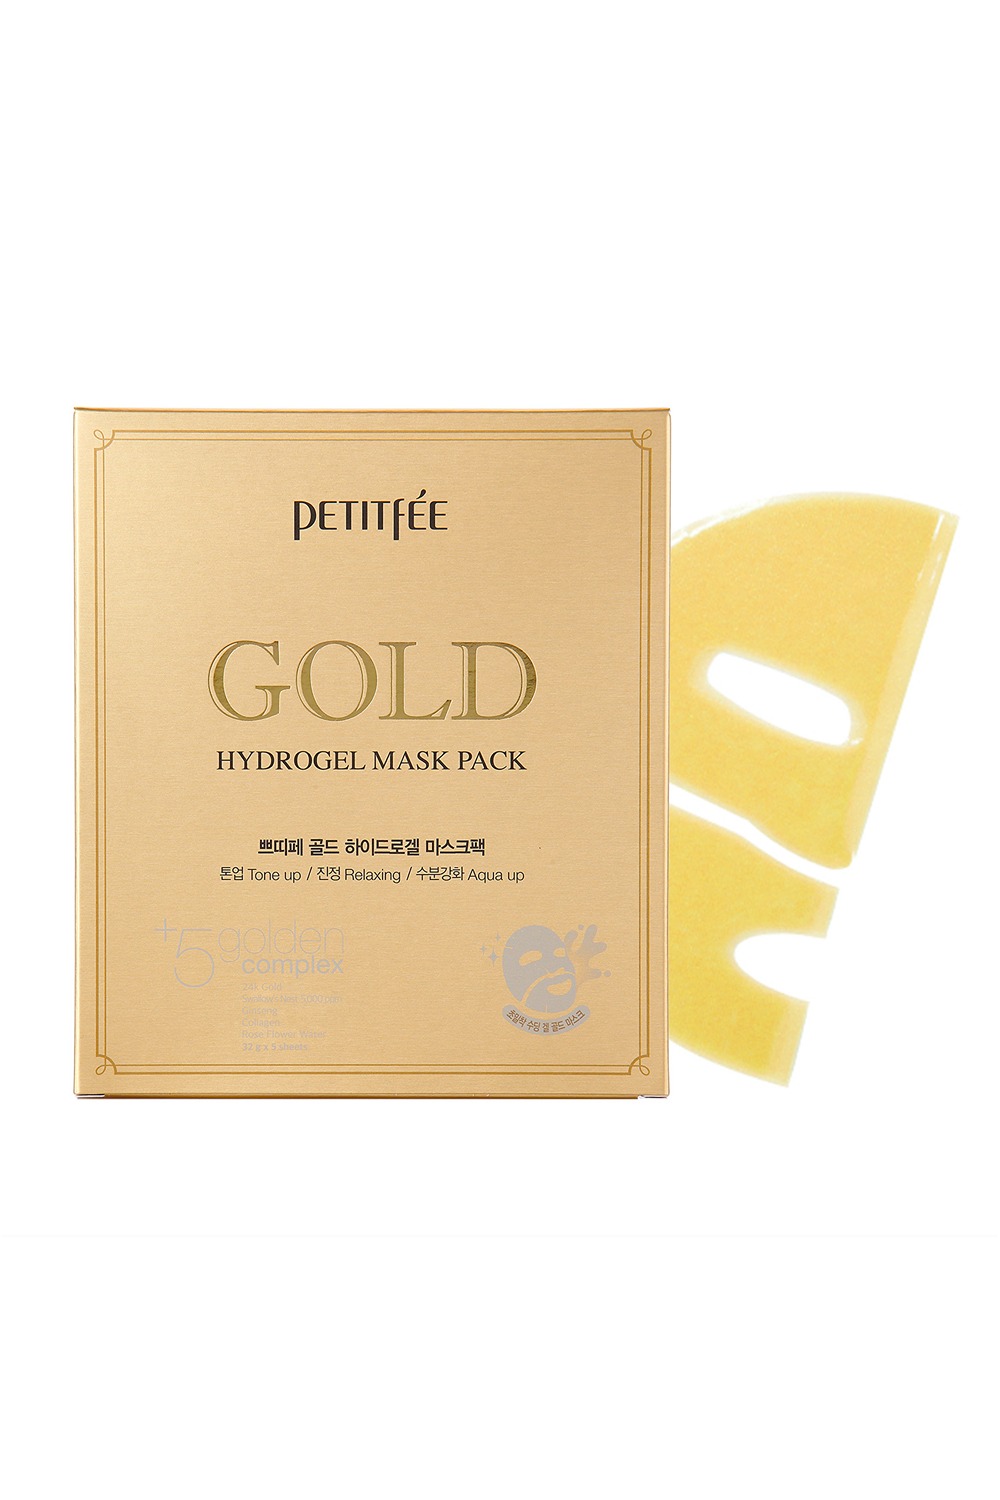 Petitfée Gold Hydrogel Sheet Mask 